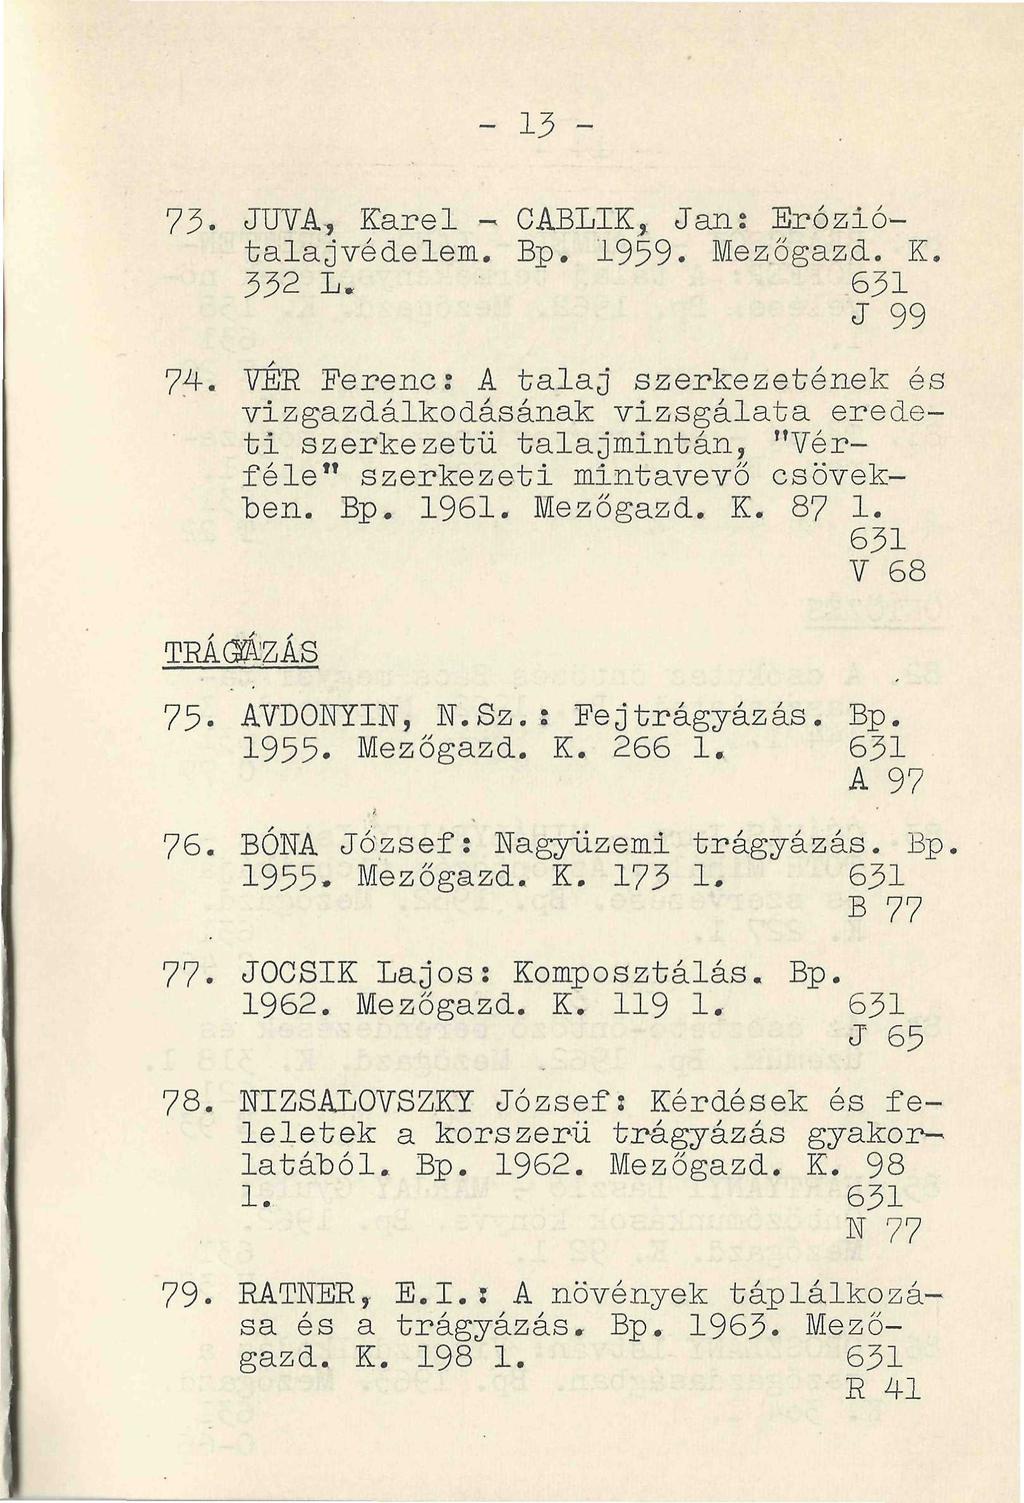 - 13-73. JUVA, Karel - CABLIK, Jan: Eróziótalajvédelem. Bp. 1959. Mezőgazd. K. 332 L. 631 J 99 74.